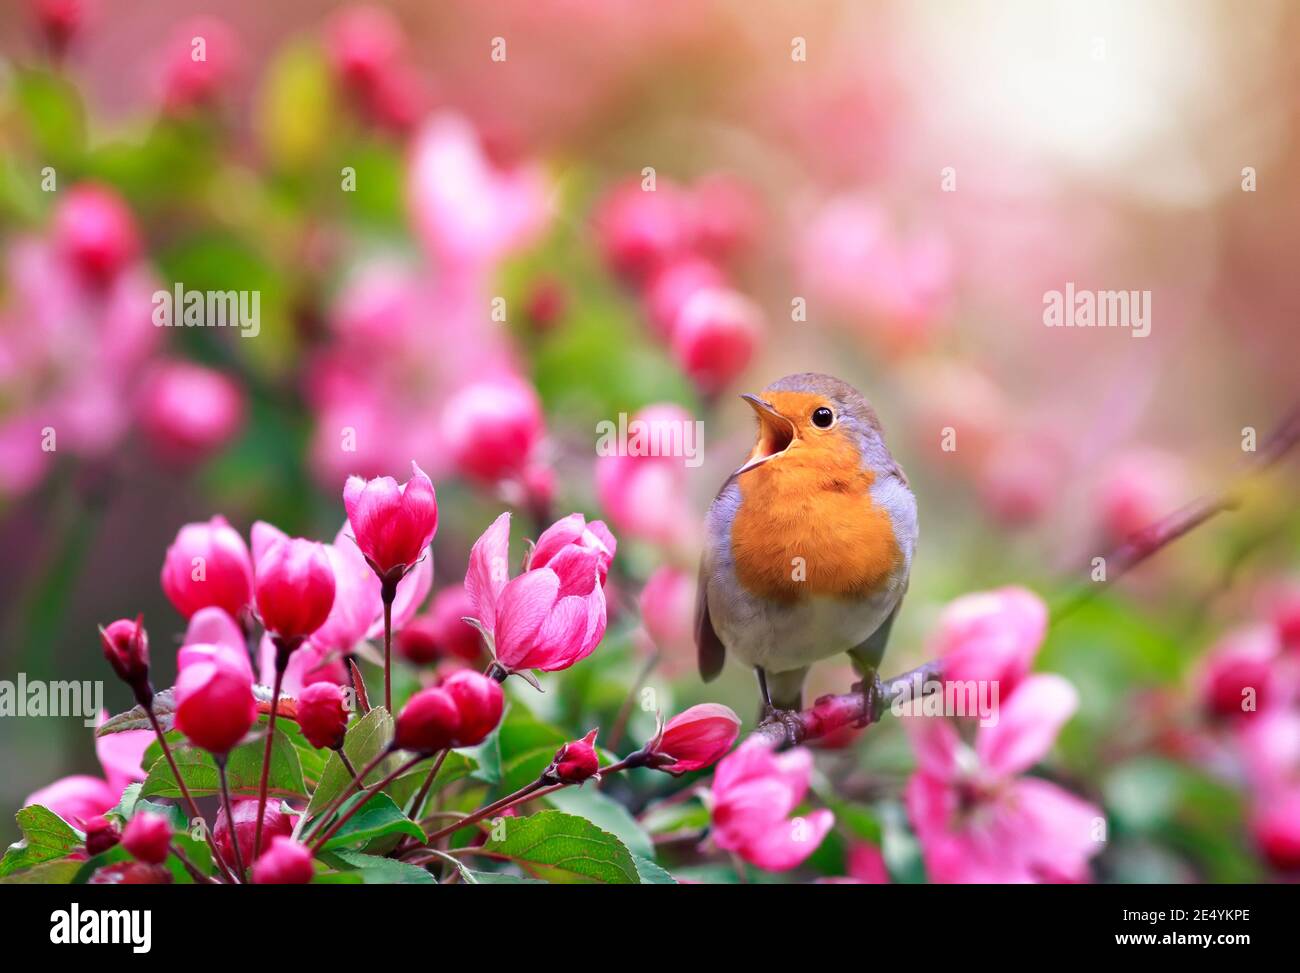 Der kleine singvogel, ein Rotkehlchen, sitzt im Mai in einem sonnigen Garten inmitten der Blumen eines Apfelbaums Stockfoto